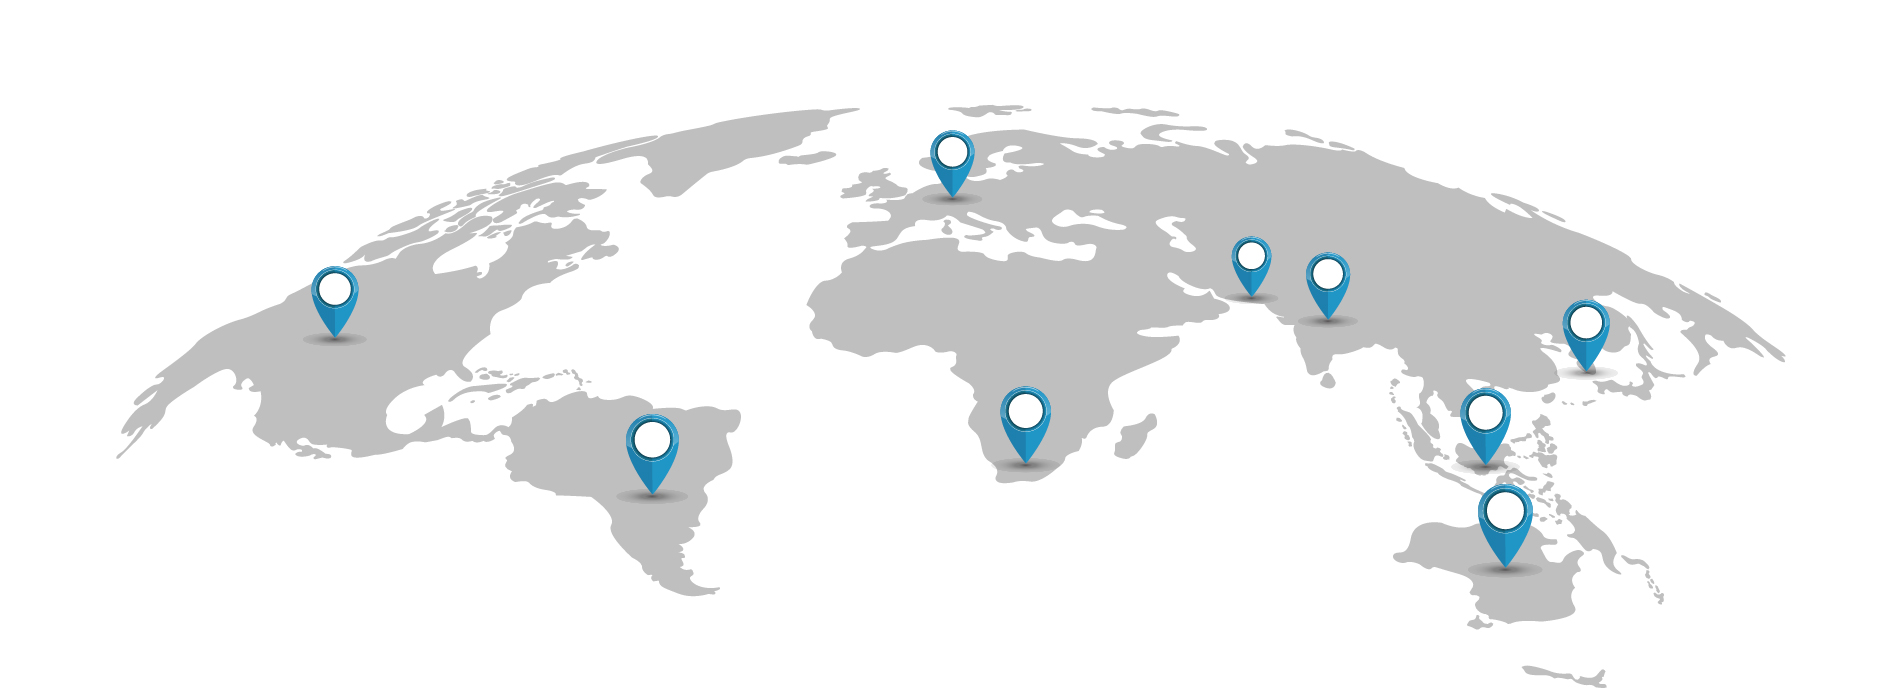 Gellert clients network world map